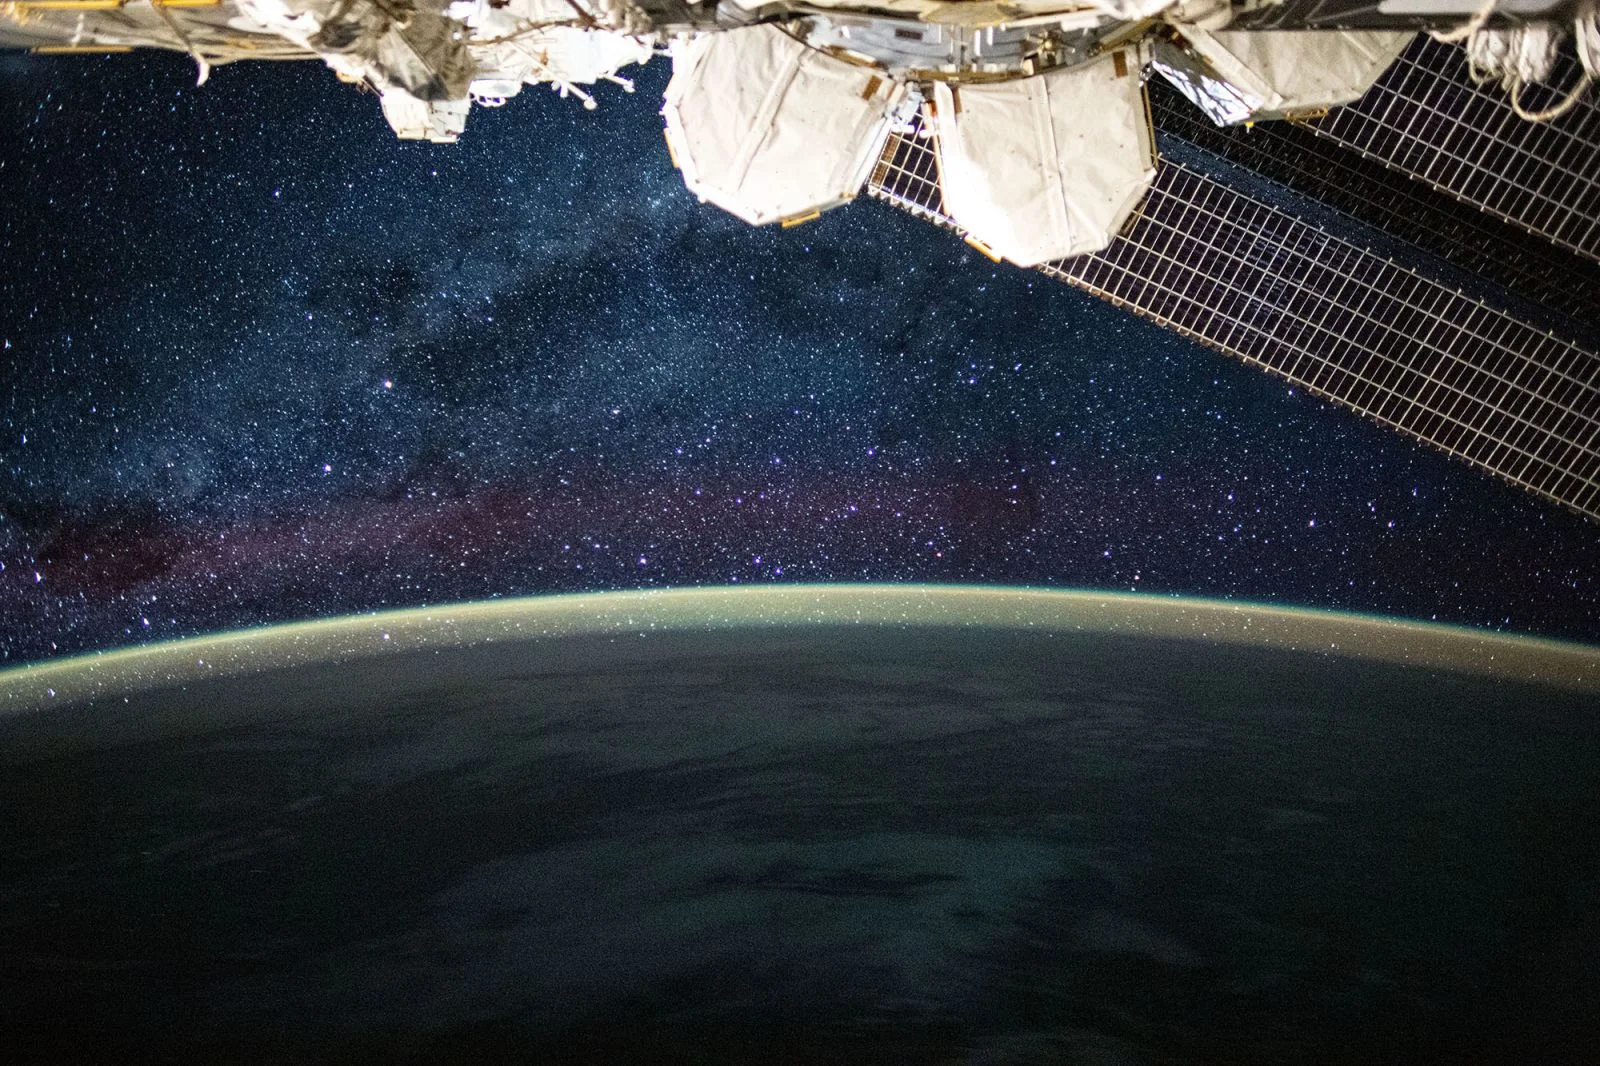 17 впечатляющих фото, которые сделали астронавты во время исторической миссии NASA-SpaceX - фото 487173